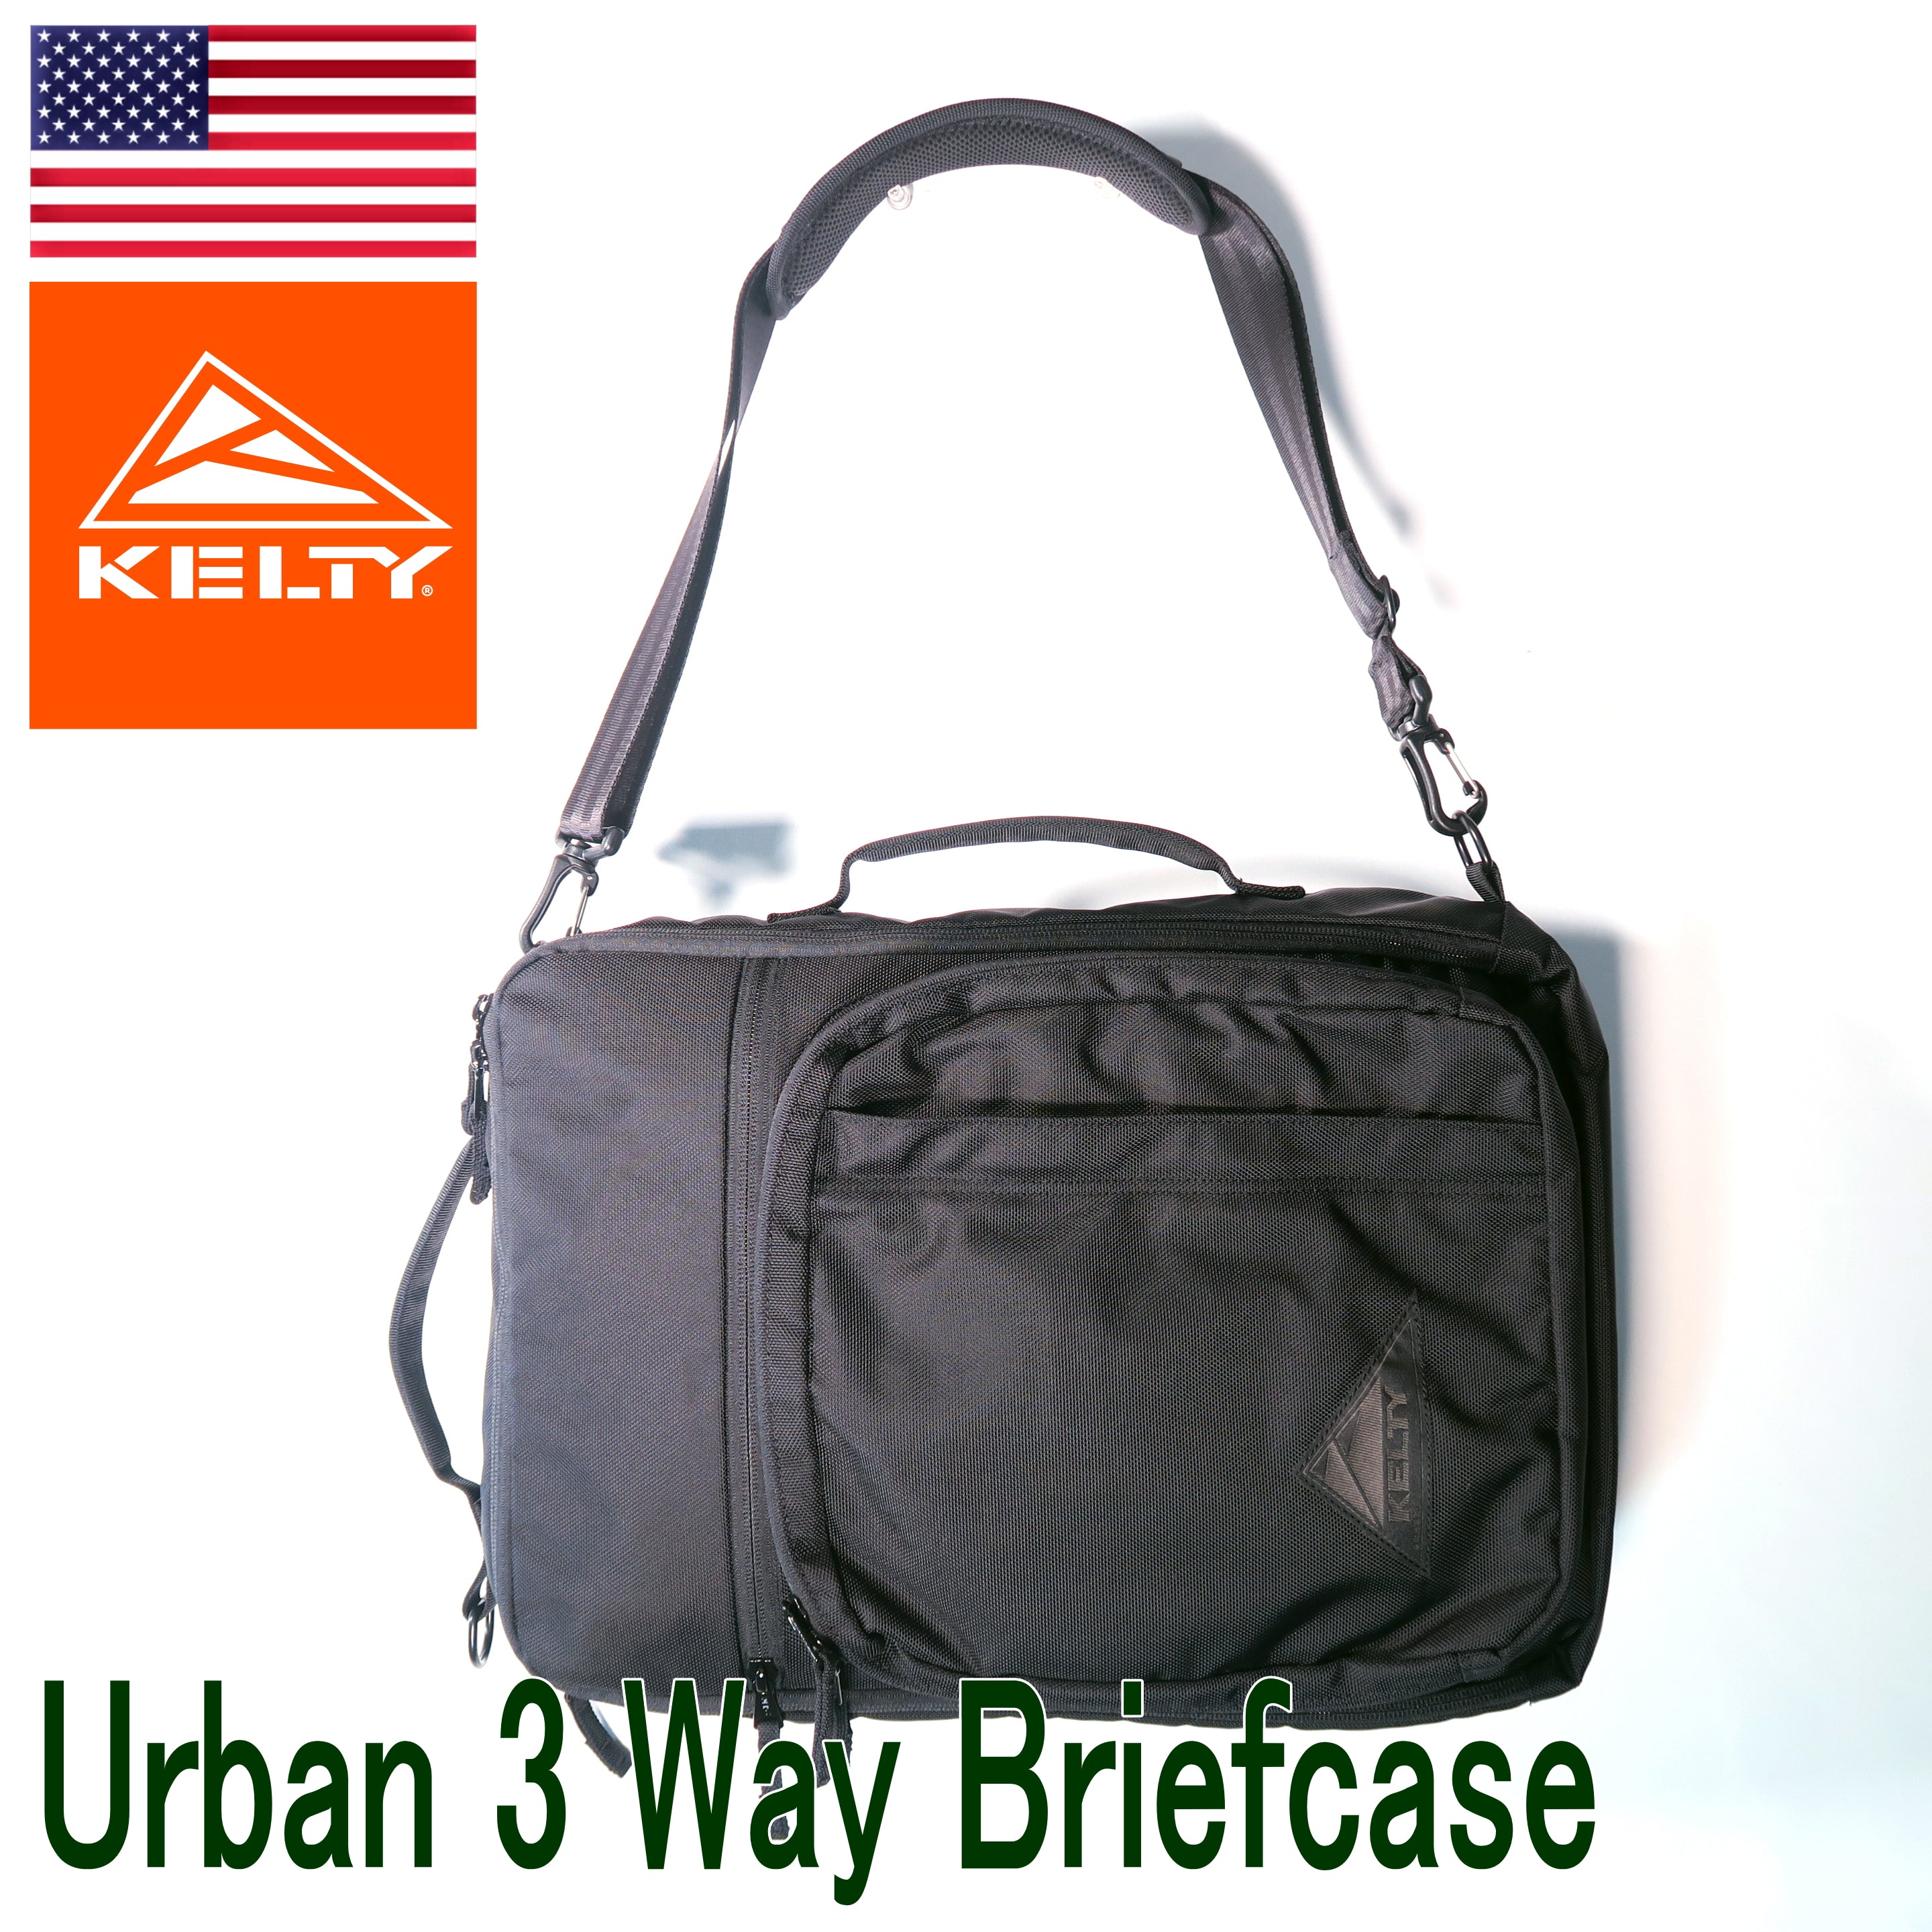 Urban 3 Way Briefcase